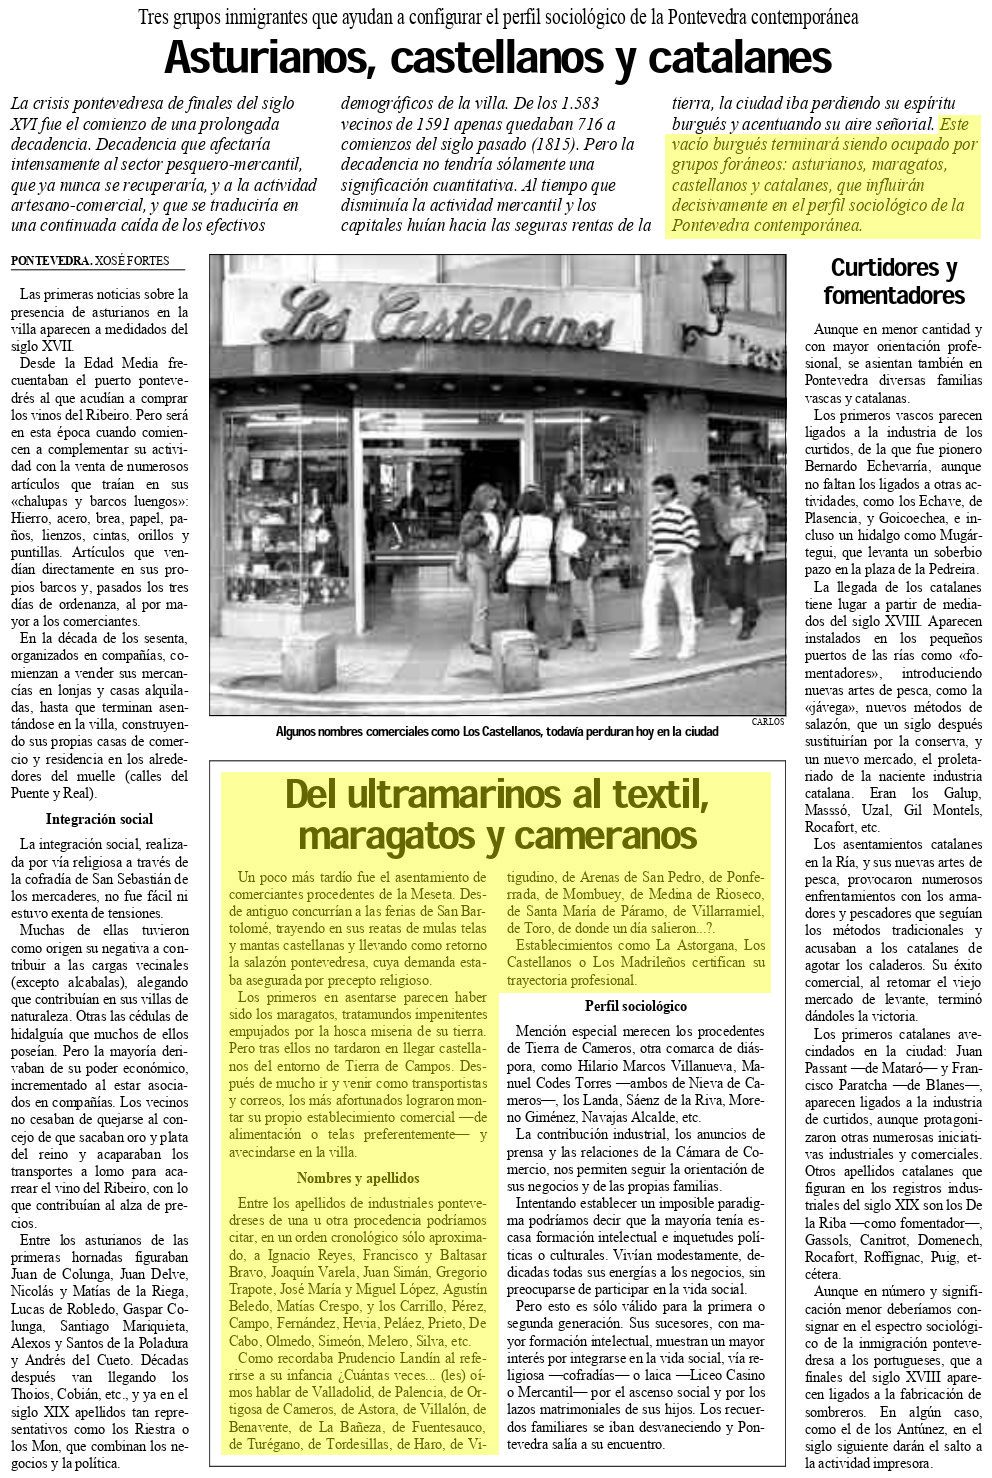 La Voz de Galicia, 02/04/1995